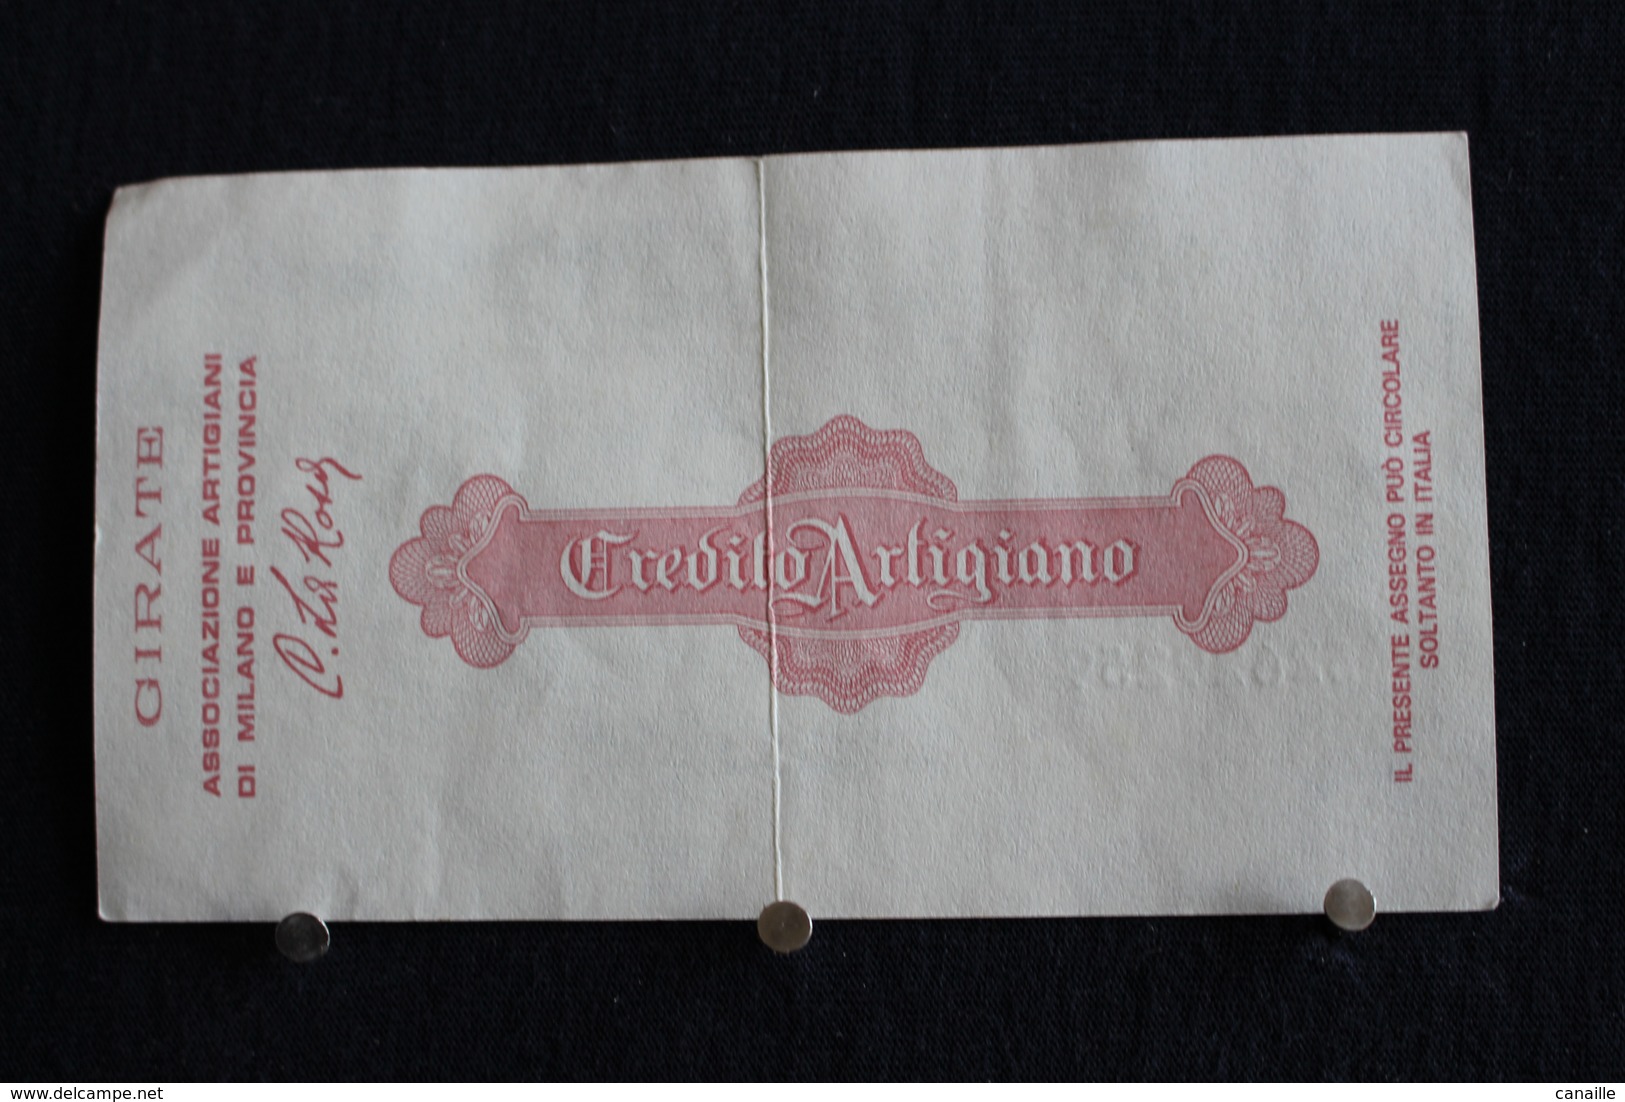 11 / Italie / 1946: Royaume / Biglietti Di Stato - Il Credito Artigiano Milano 1/7/1977 - Vale 100 Lire - - 100 Lire